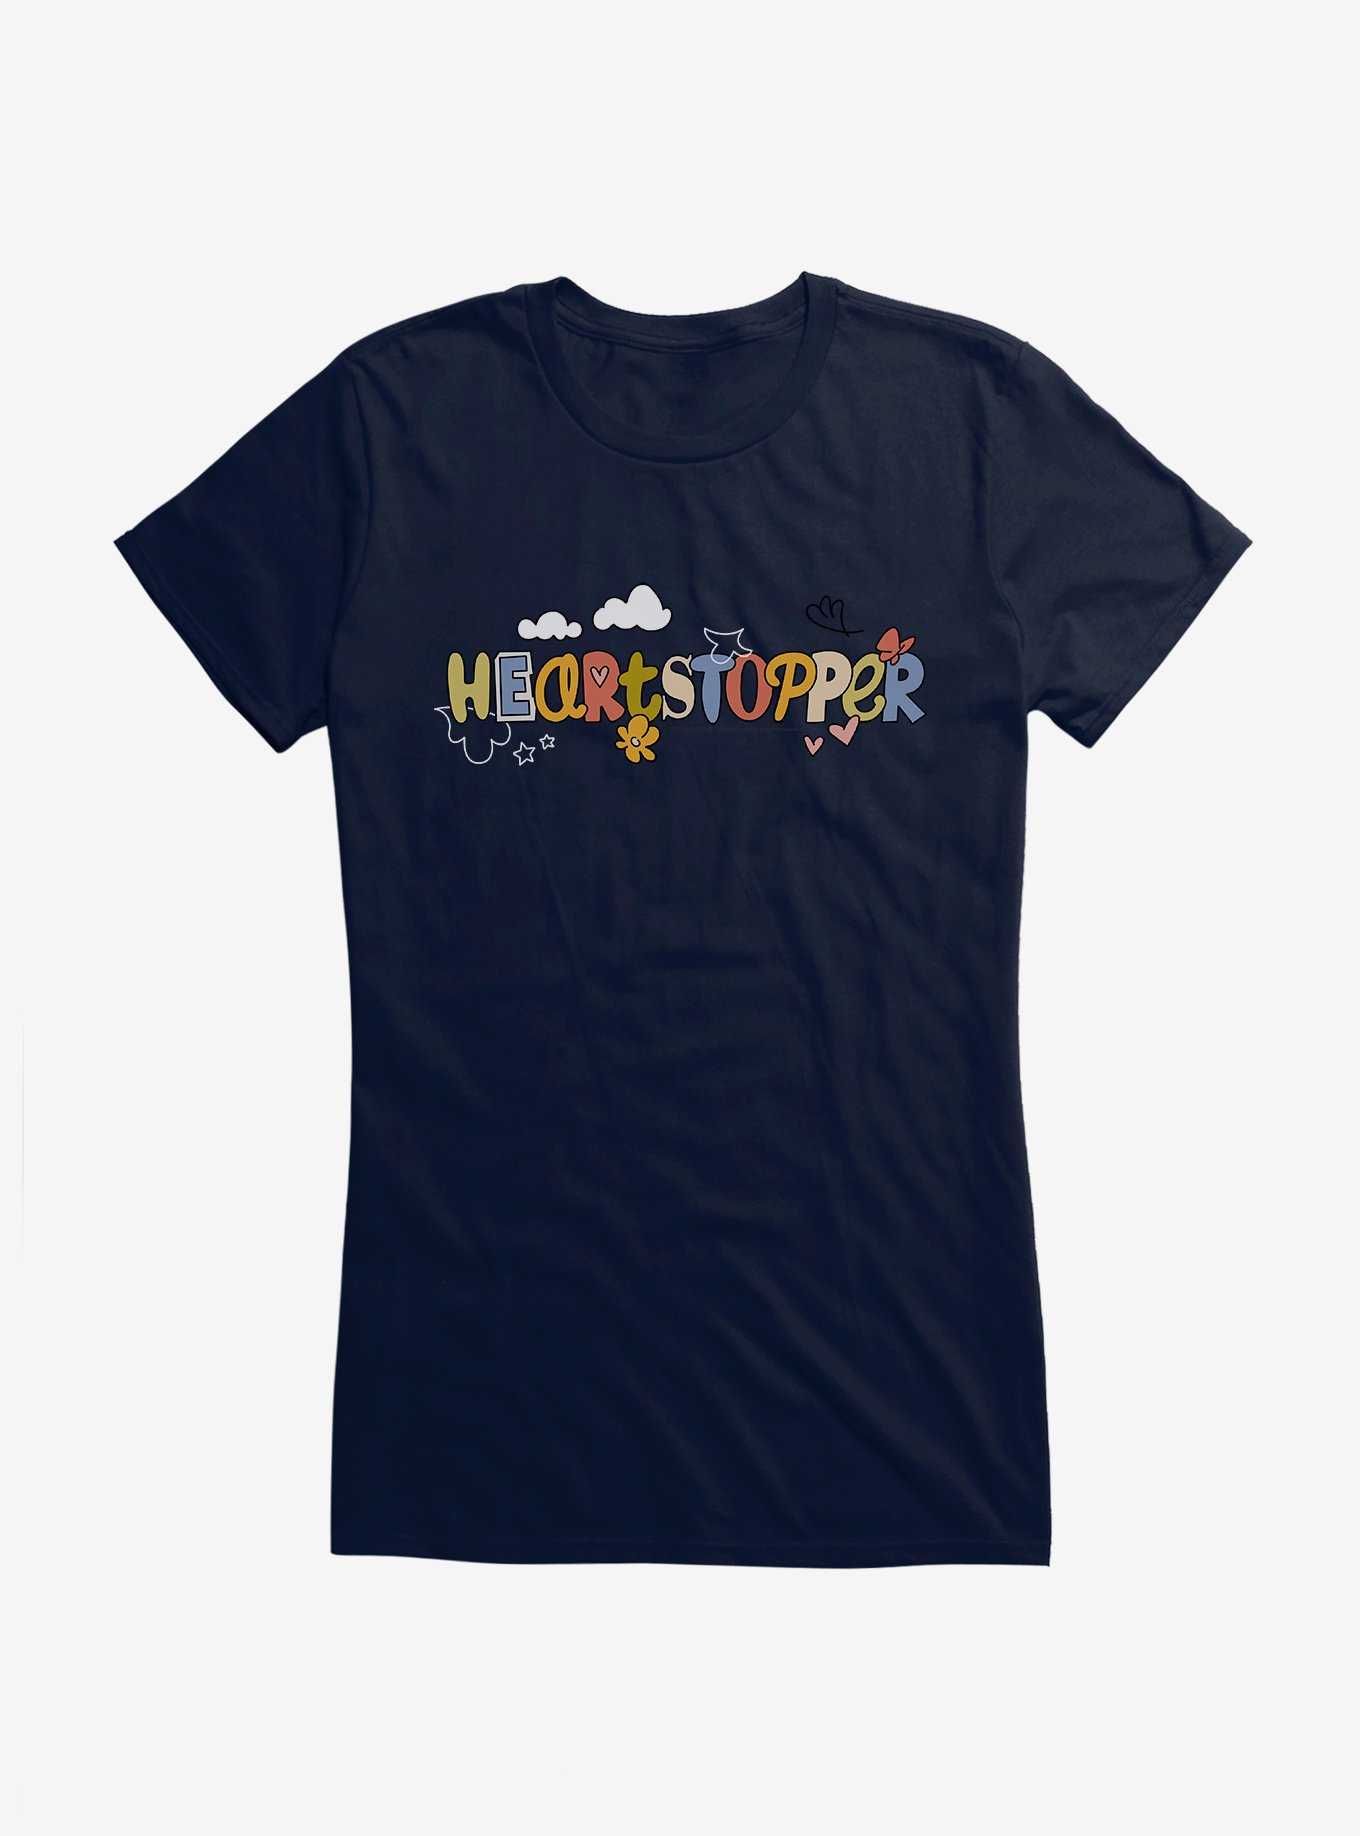 Heartstopper Doodle Title Girls T-Shirt, , hi-res